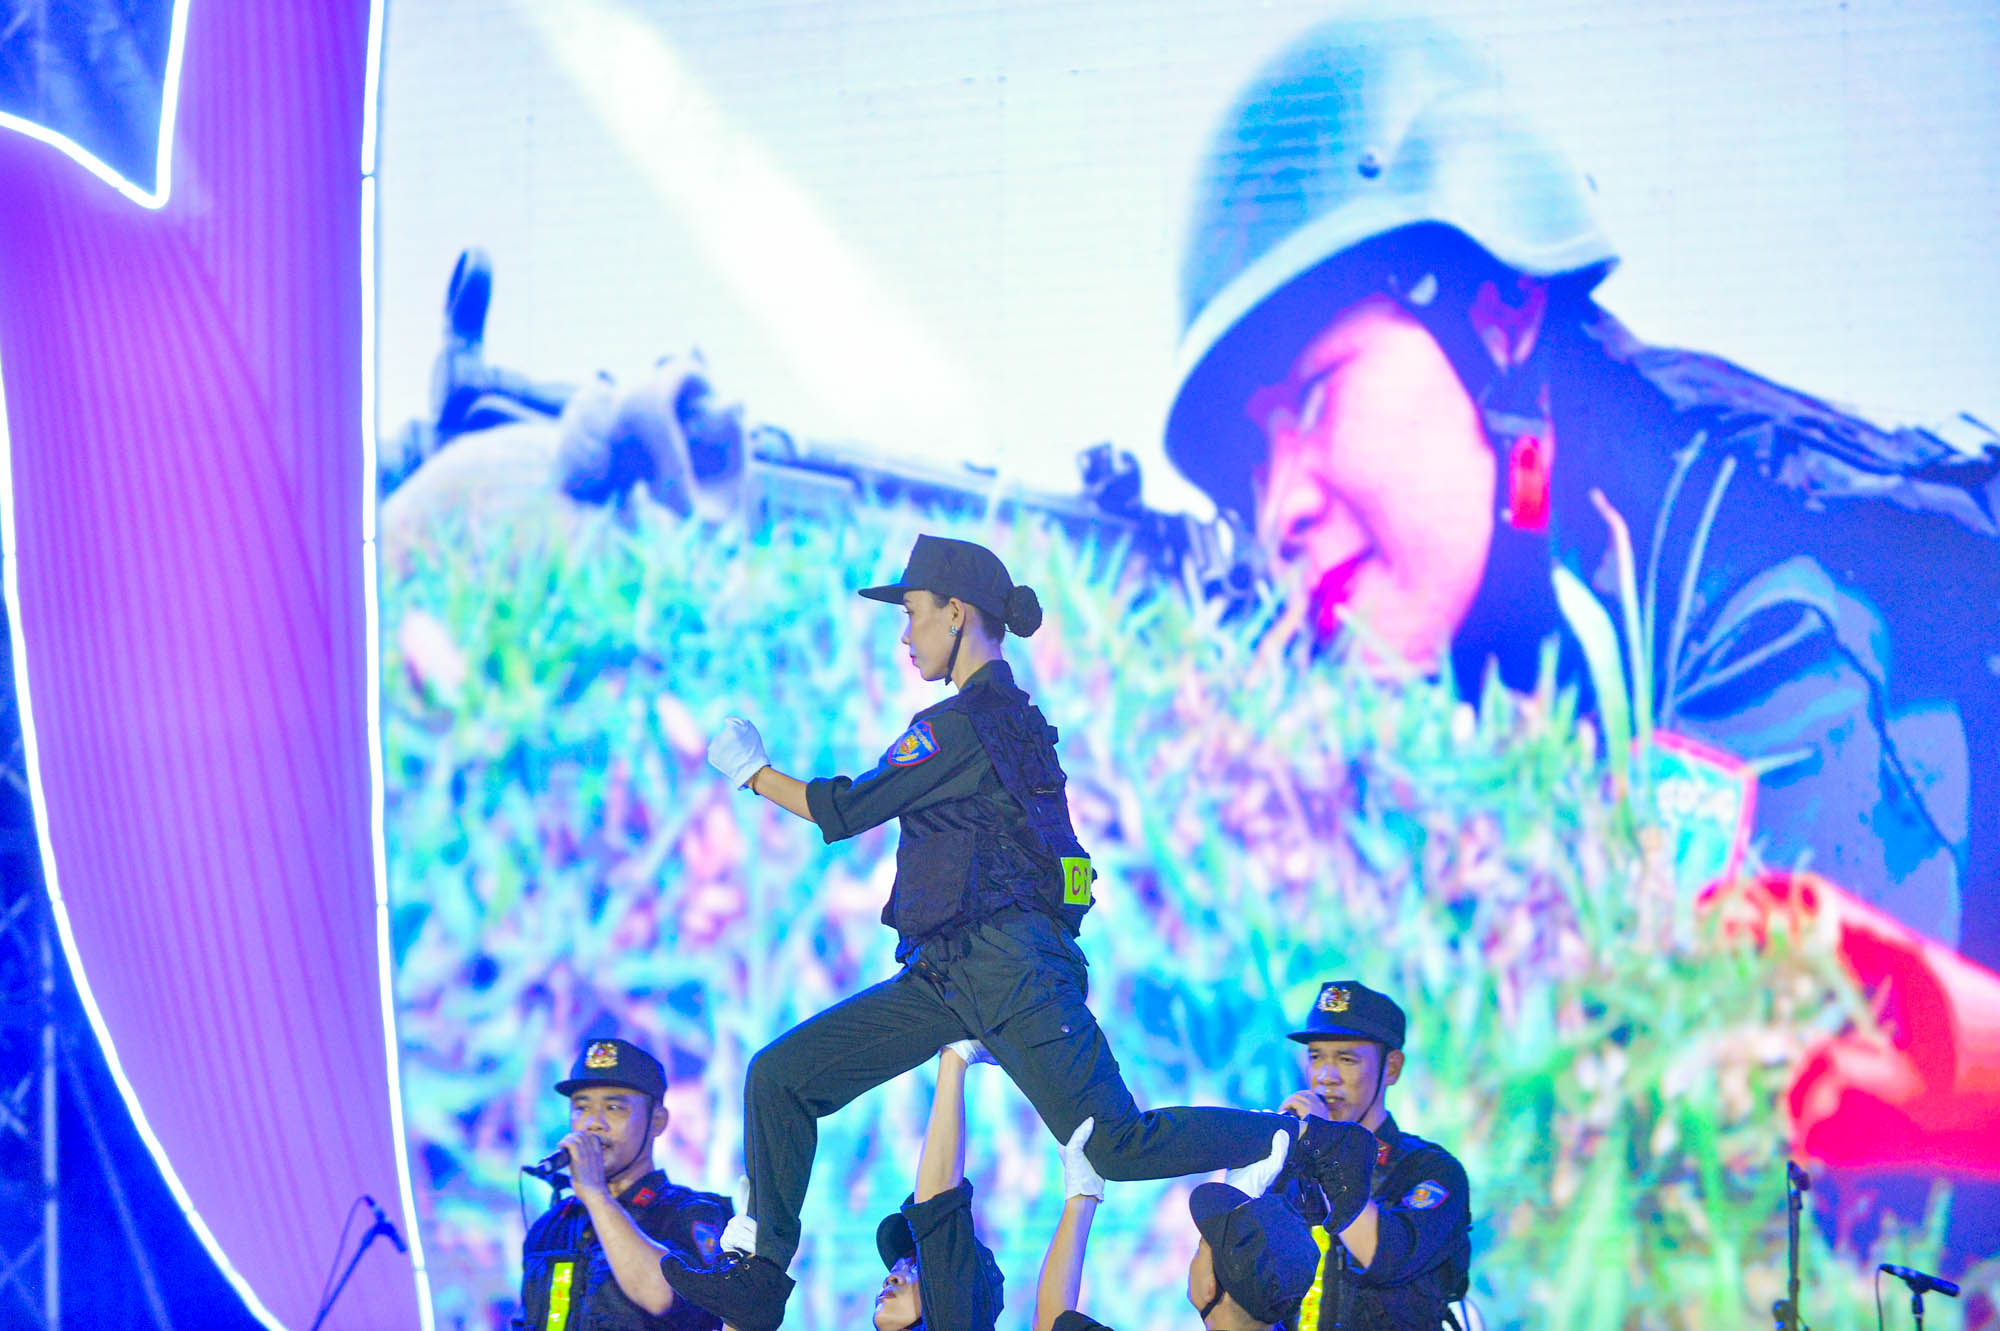 Ngắm những nữ cảnh sát xinh đẹp biểu diễn nghệ thuật trên phố đi bộ Hà Nội - Ảnh 5.